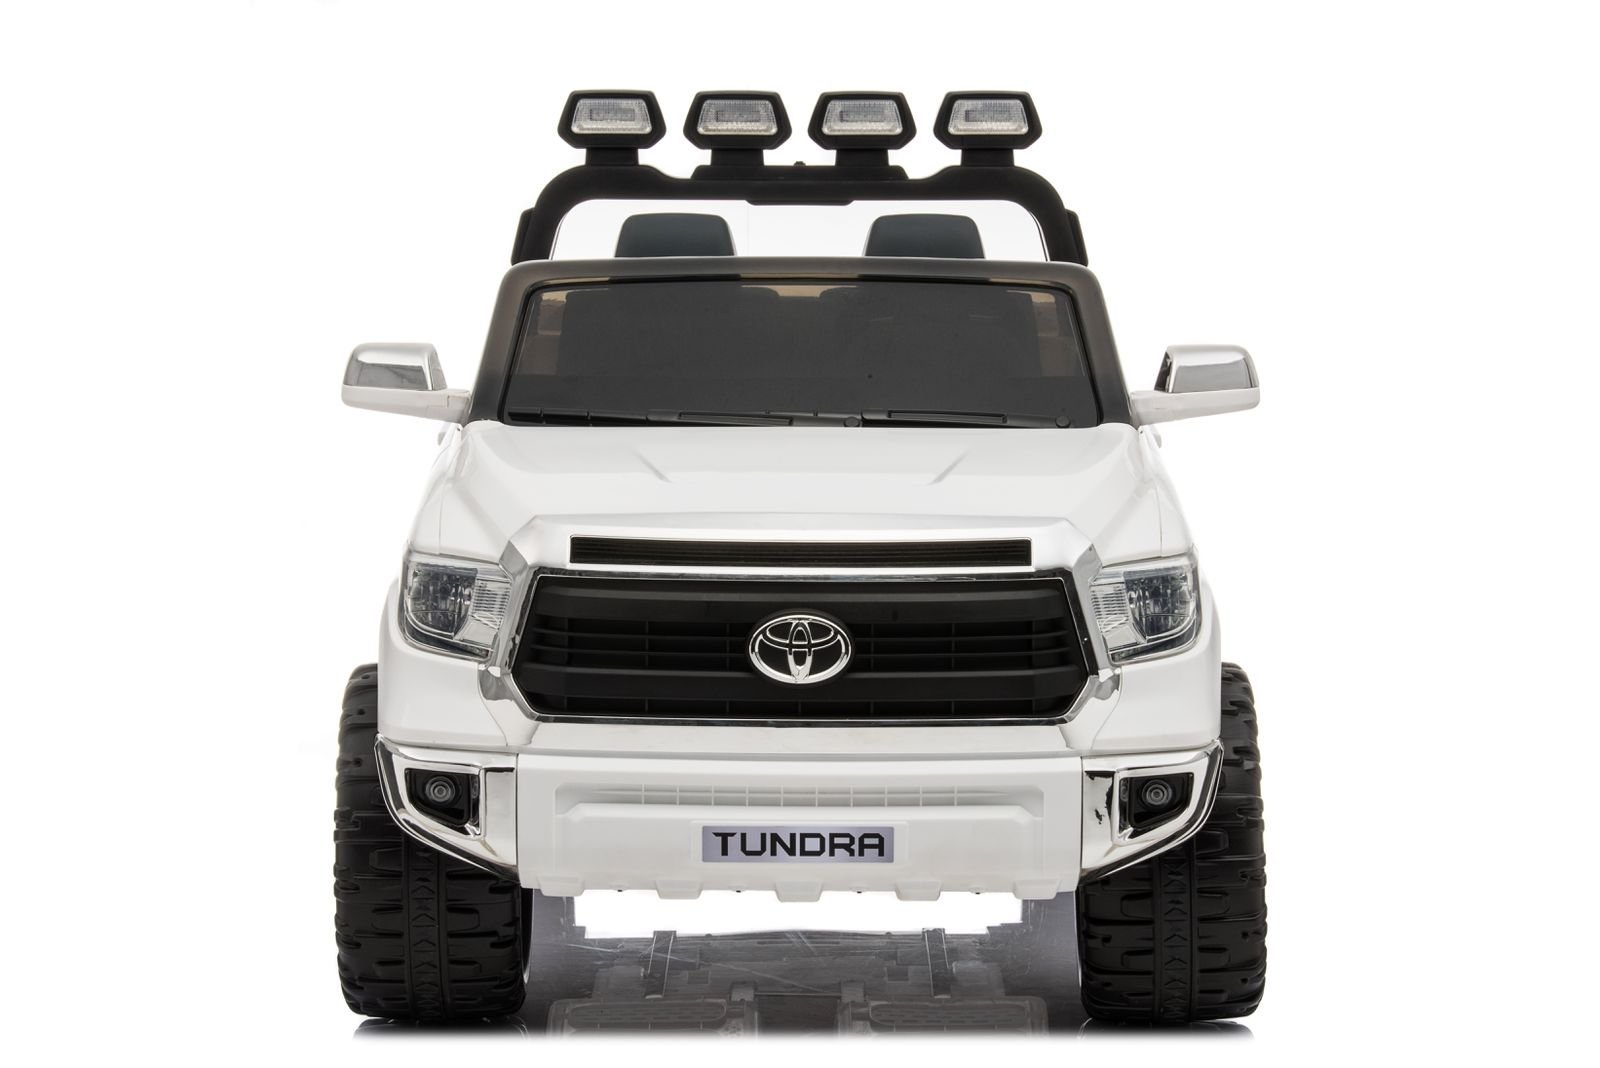 Mini Toyota Tundra Branco Carro Elétrico Infantil A Bateria Para Crianças Motorizado Meninos Meninas - 1